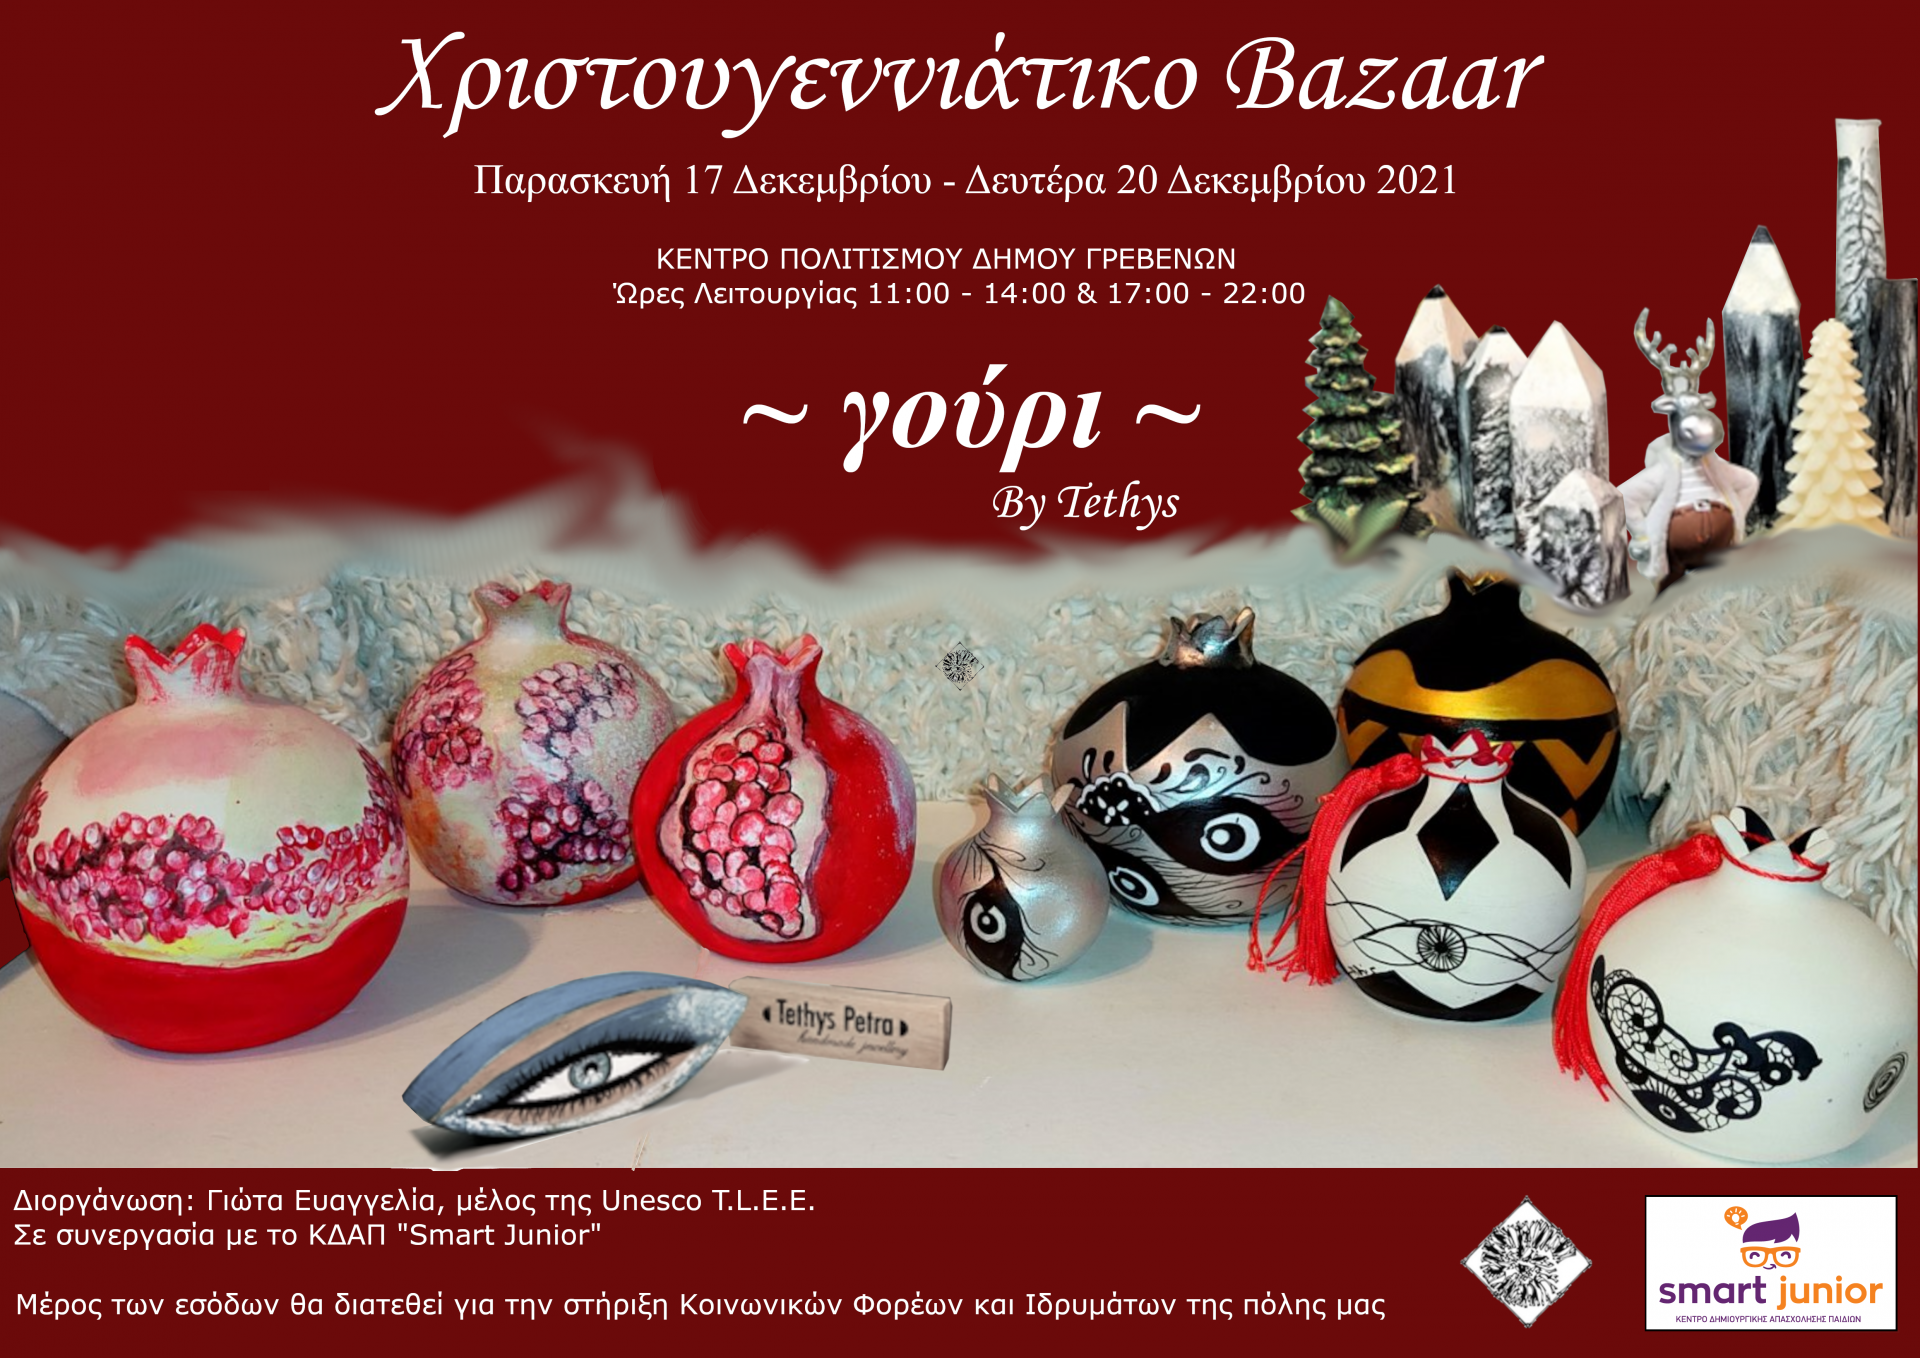 Χριστουγεννιάτικο bazaar την Παρασκευή 17 και Δευτέρα 20 Δεκεμβρίου στο Κέντρο Πολιτισμού Δήμου Γρεβενών